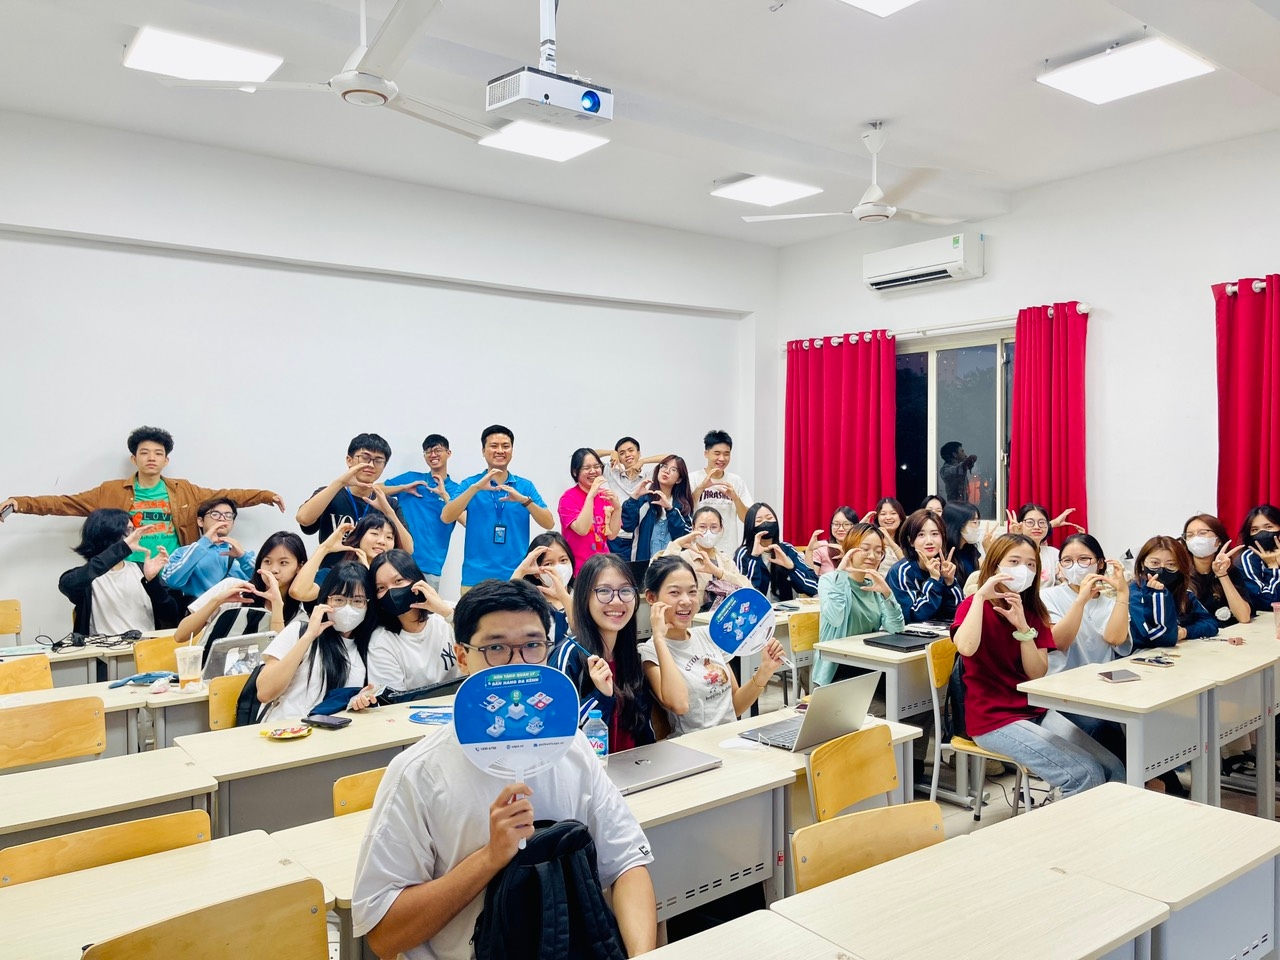 Sapo tham gia nội dung đào tạo thực tế về Digital Marketing cho sinh viên trường Đại học Kinh tế Đại học Quốc gia Hà Nội